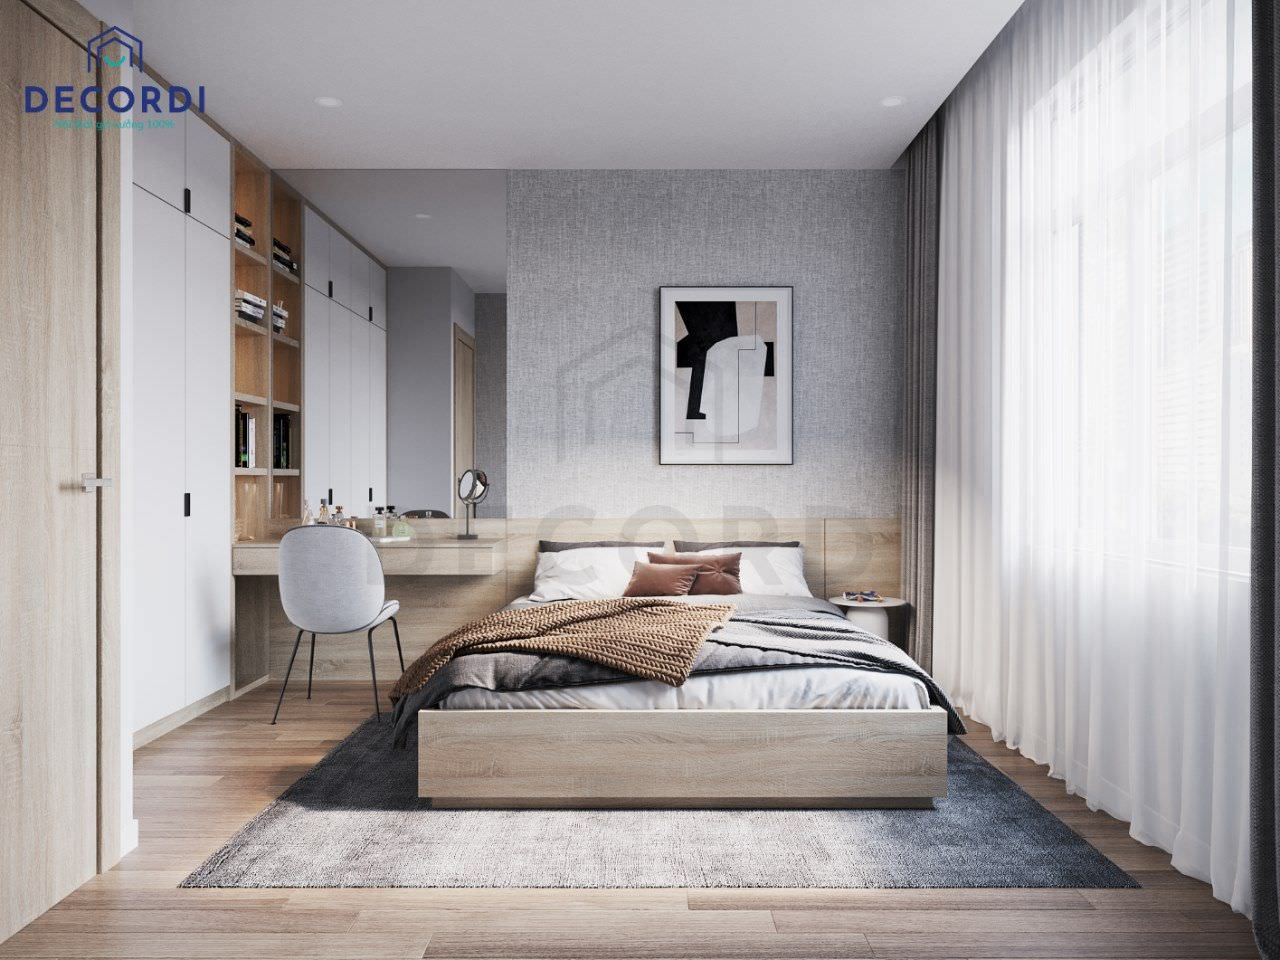 Bộ nội thất phòng ngủ tiện nghi với tông màu nâu gỗ cho không gian thêm ấm cúng, lãng mạn